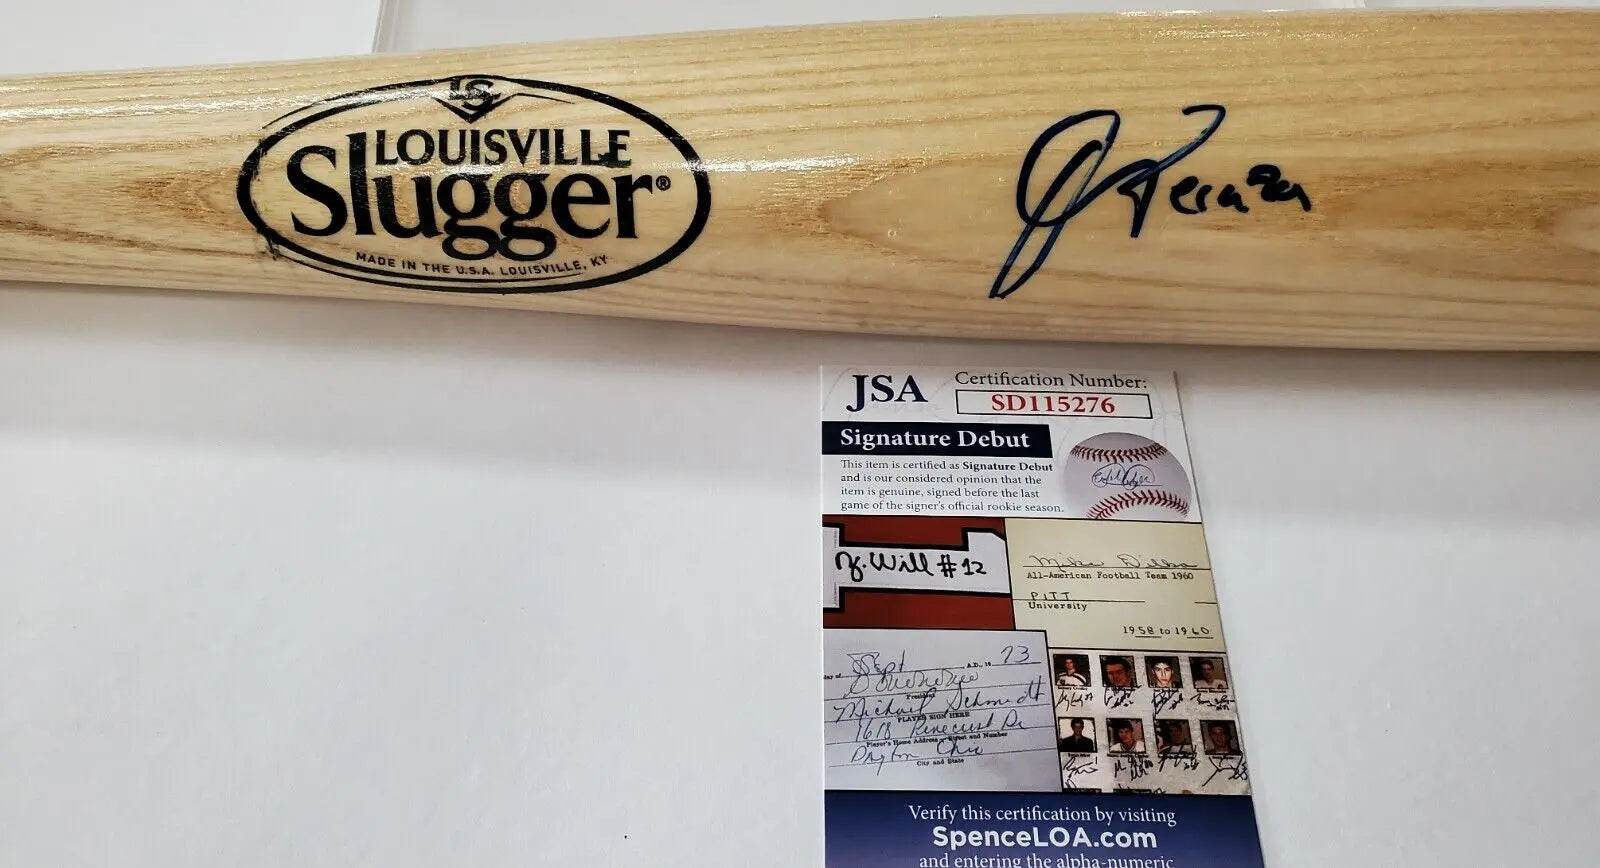 New York Yankees Graig Nettles Autographed Signed Romlb Baseball